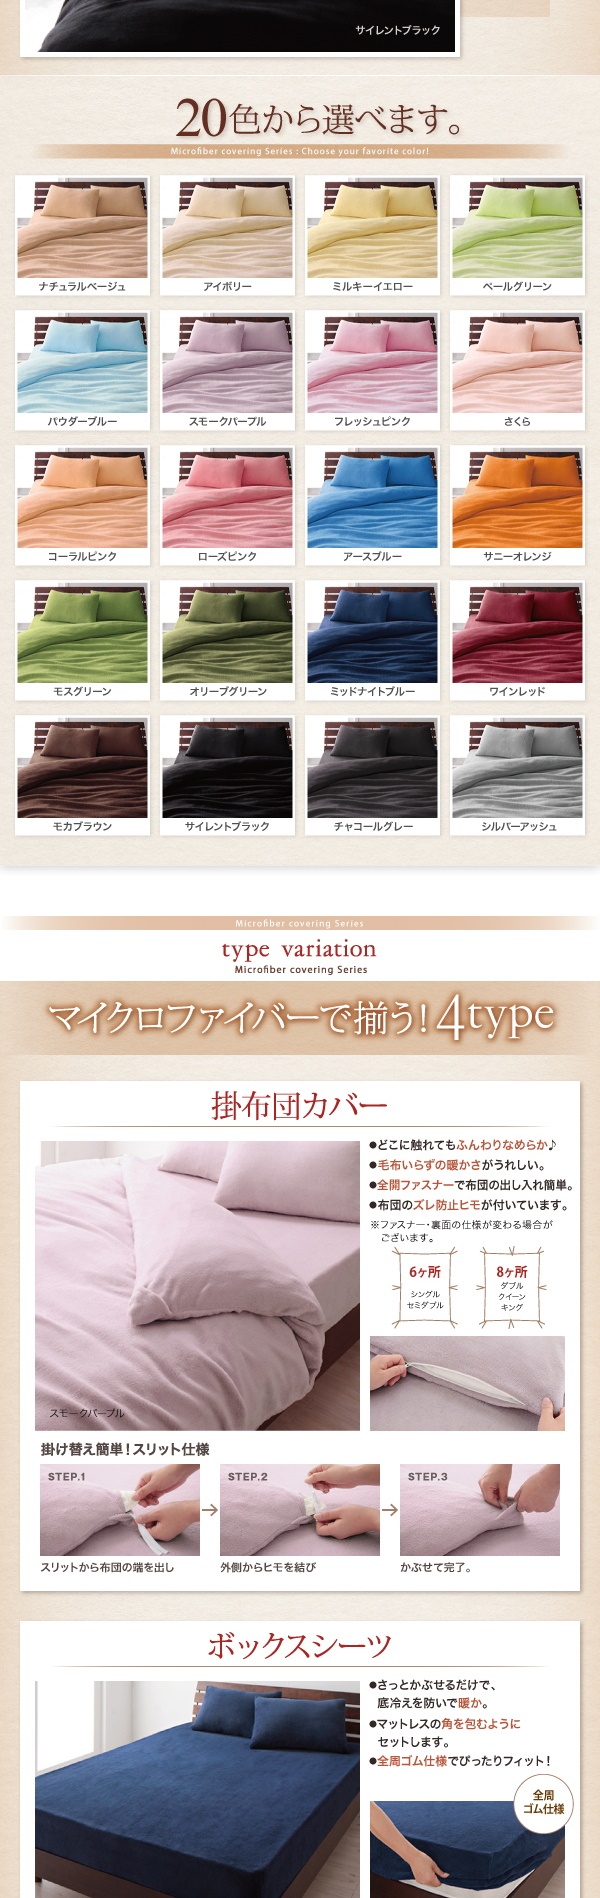 マイクロファイバー 枕カバー(ピローケース)の同色2枚セット 43x63cm 色-ローズピンク 寝具 まくらかばー マクラカバー 洗濯可 寝具 